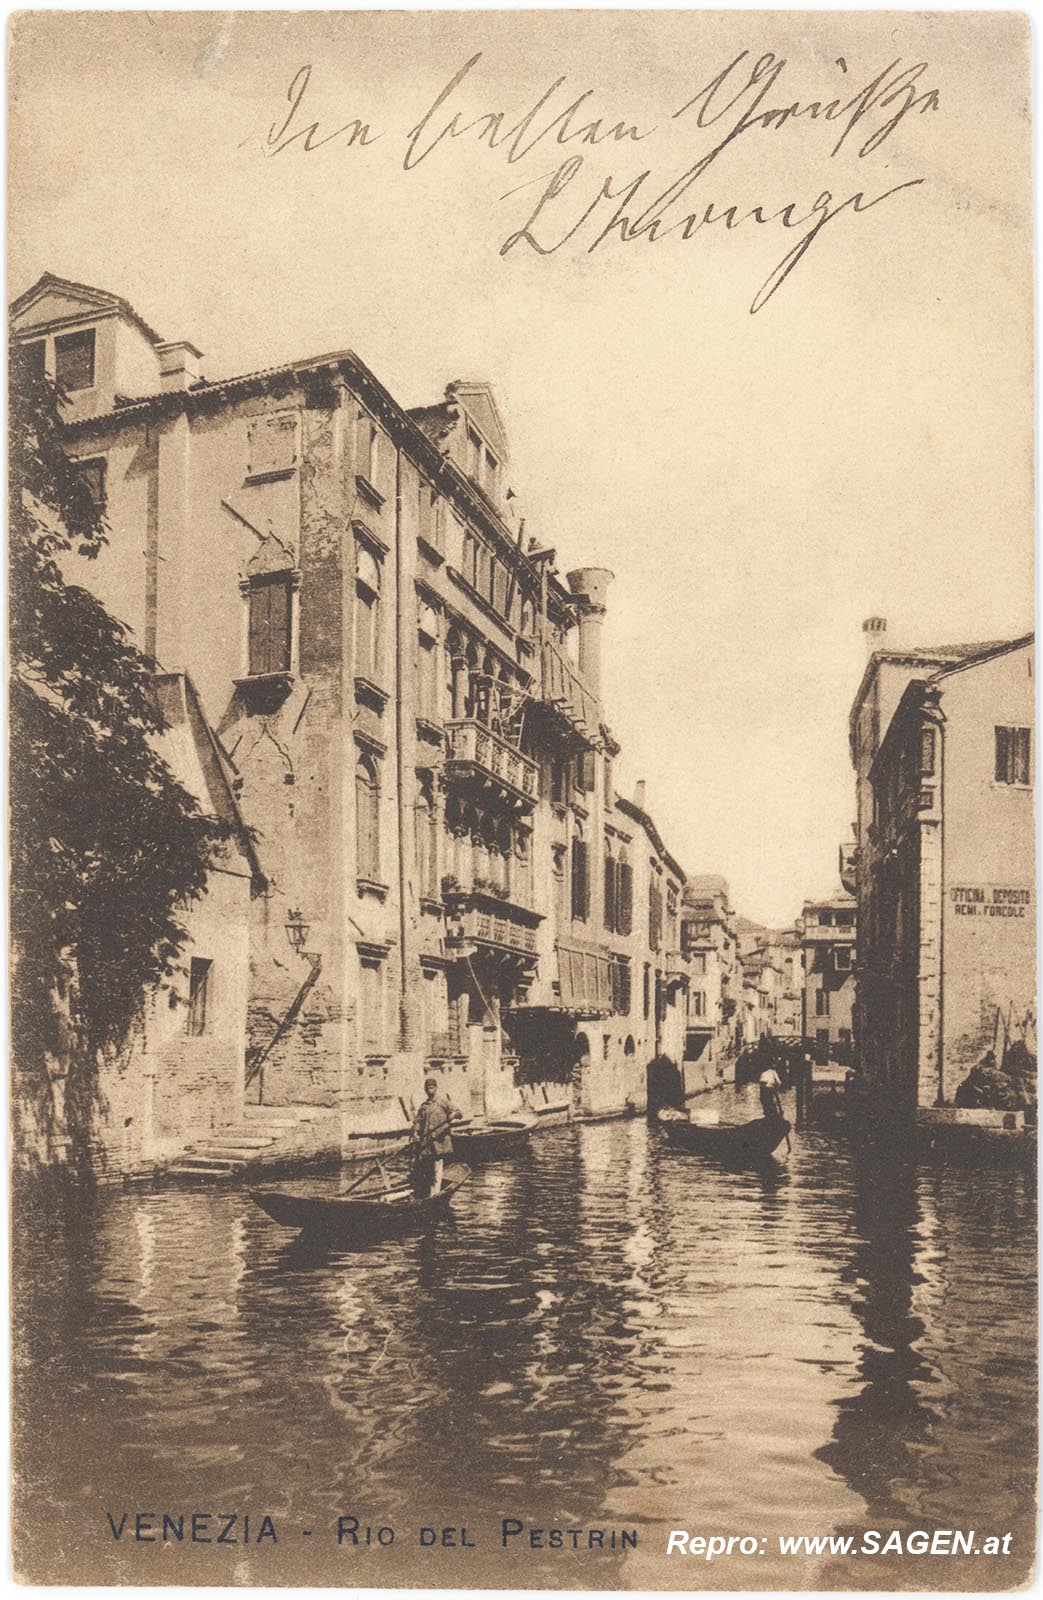 Venezia, Rio del Pestrin